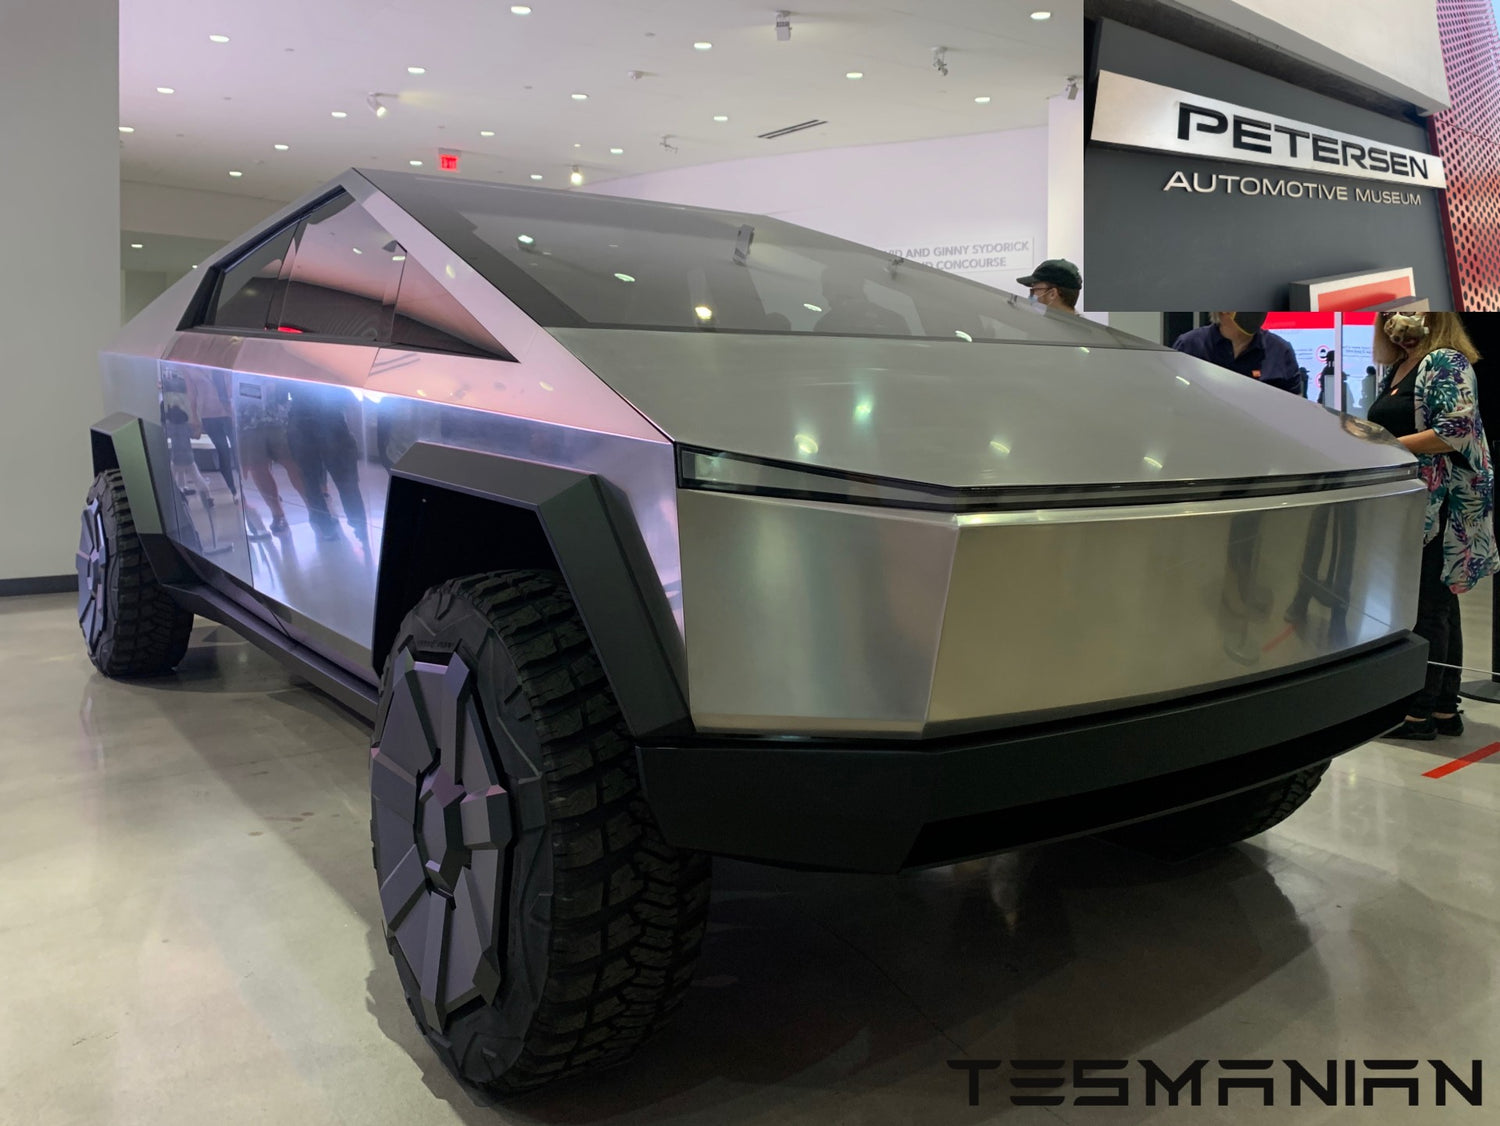 Tesla-Cybertruck-Petersen-Automotive-Museum-4